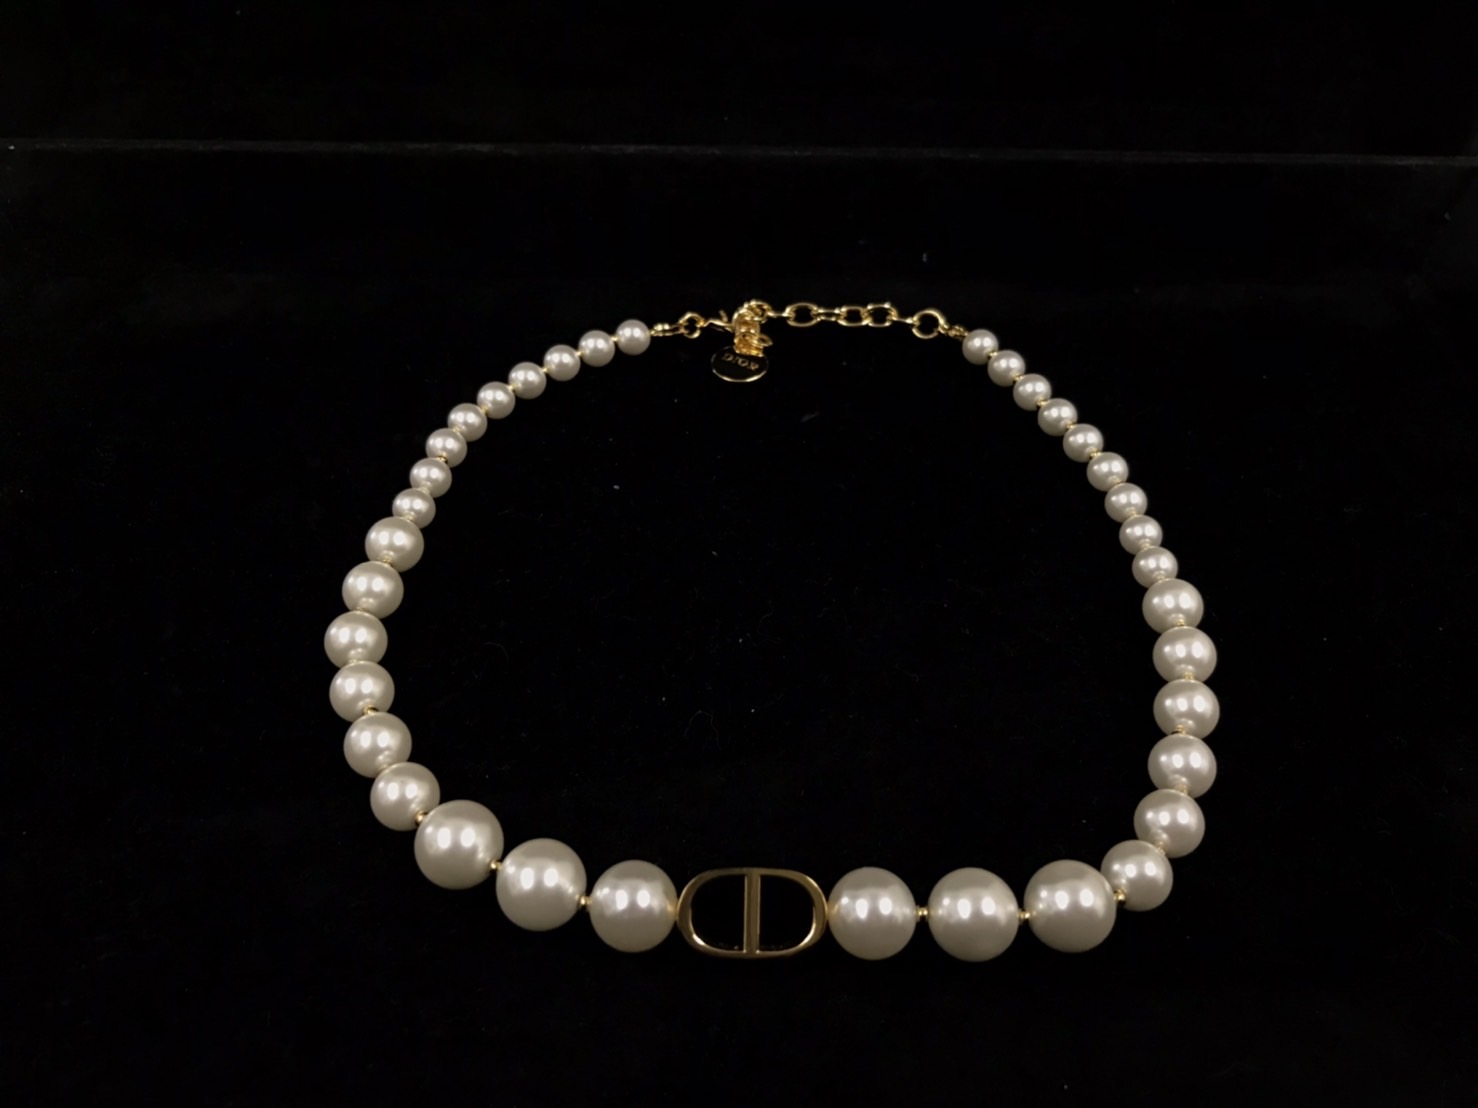 Christian Dior】30 MONTAIGNE メタル&レジンパールチョーカー【買取